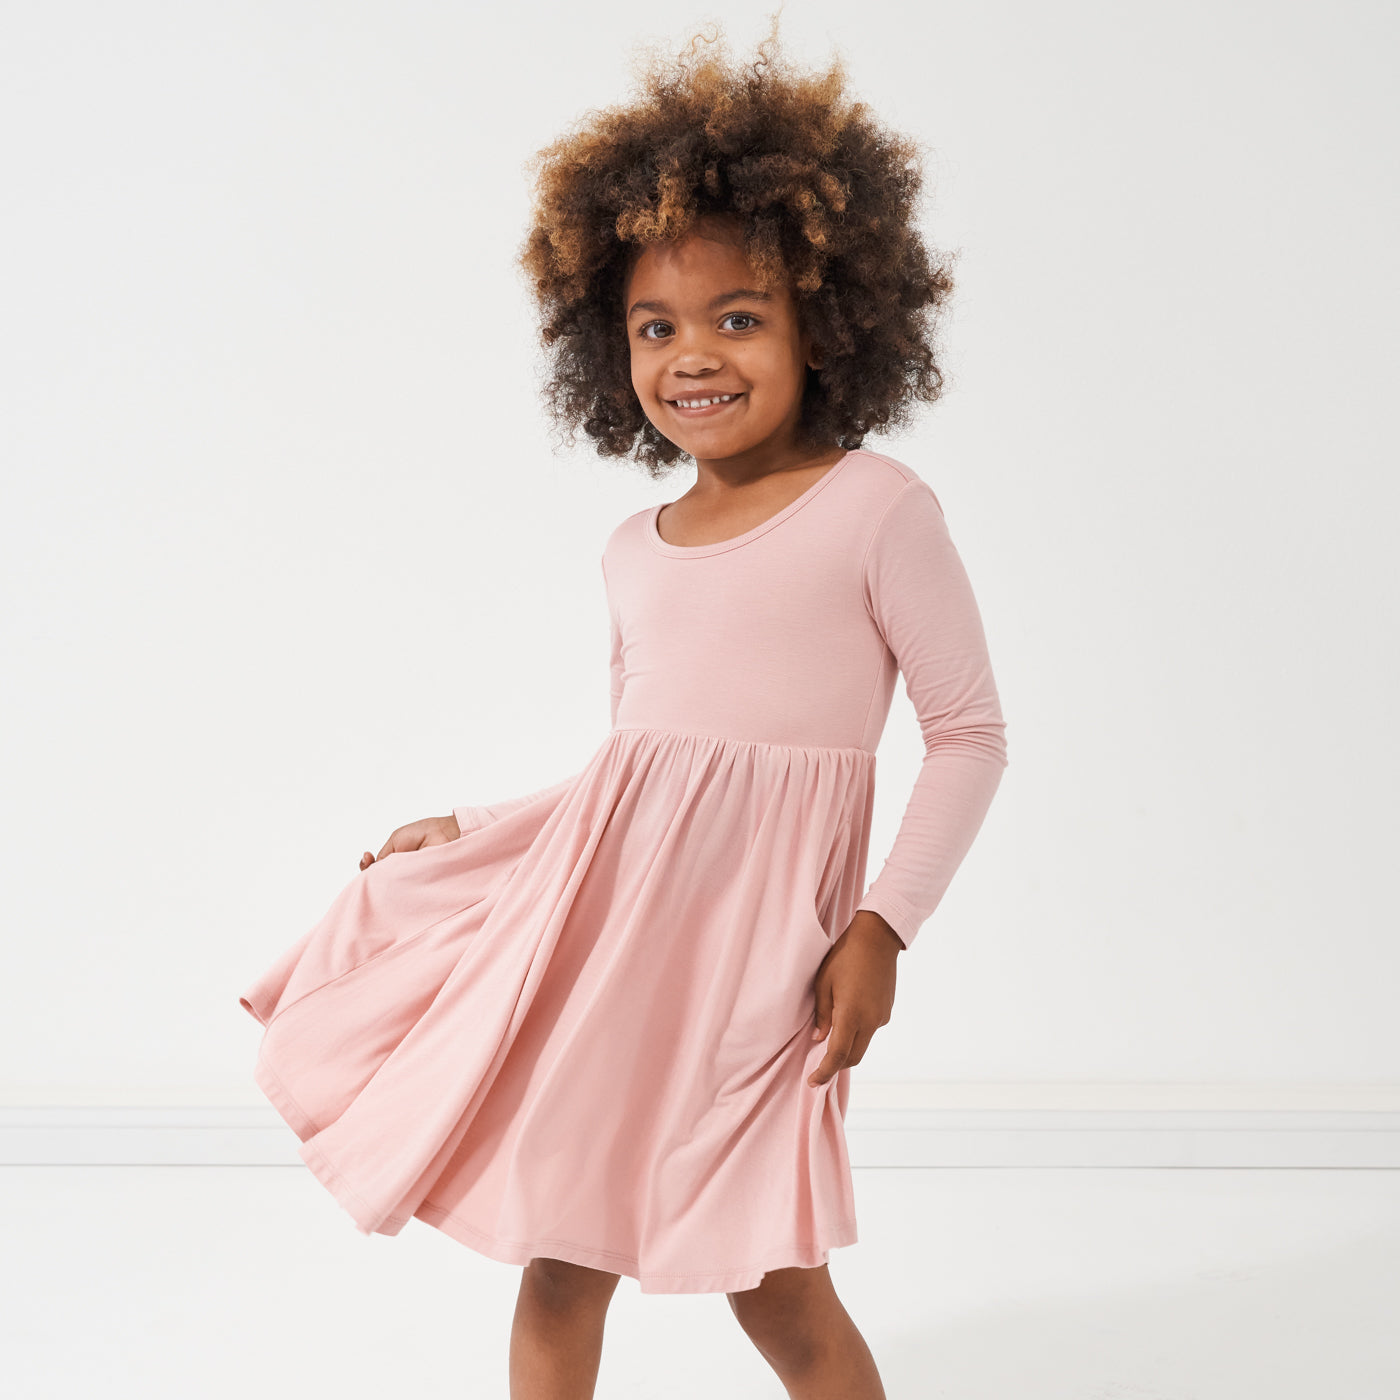 child dancing wearing a Mauve Blush twirl dress